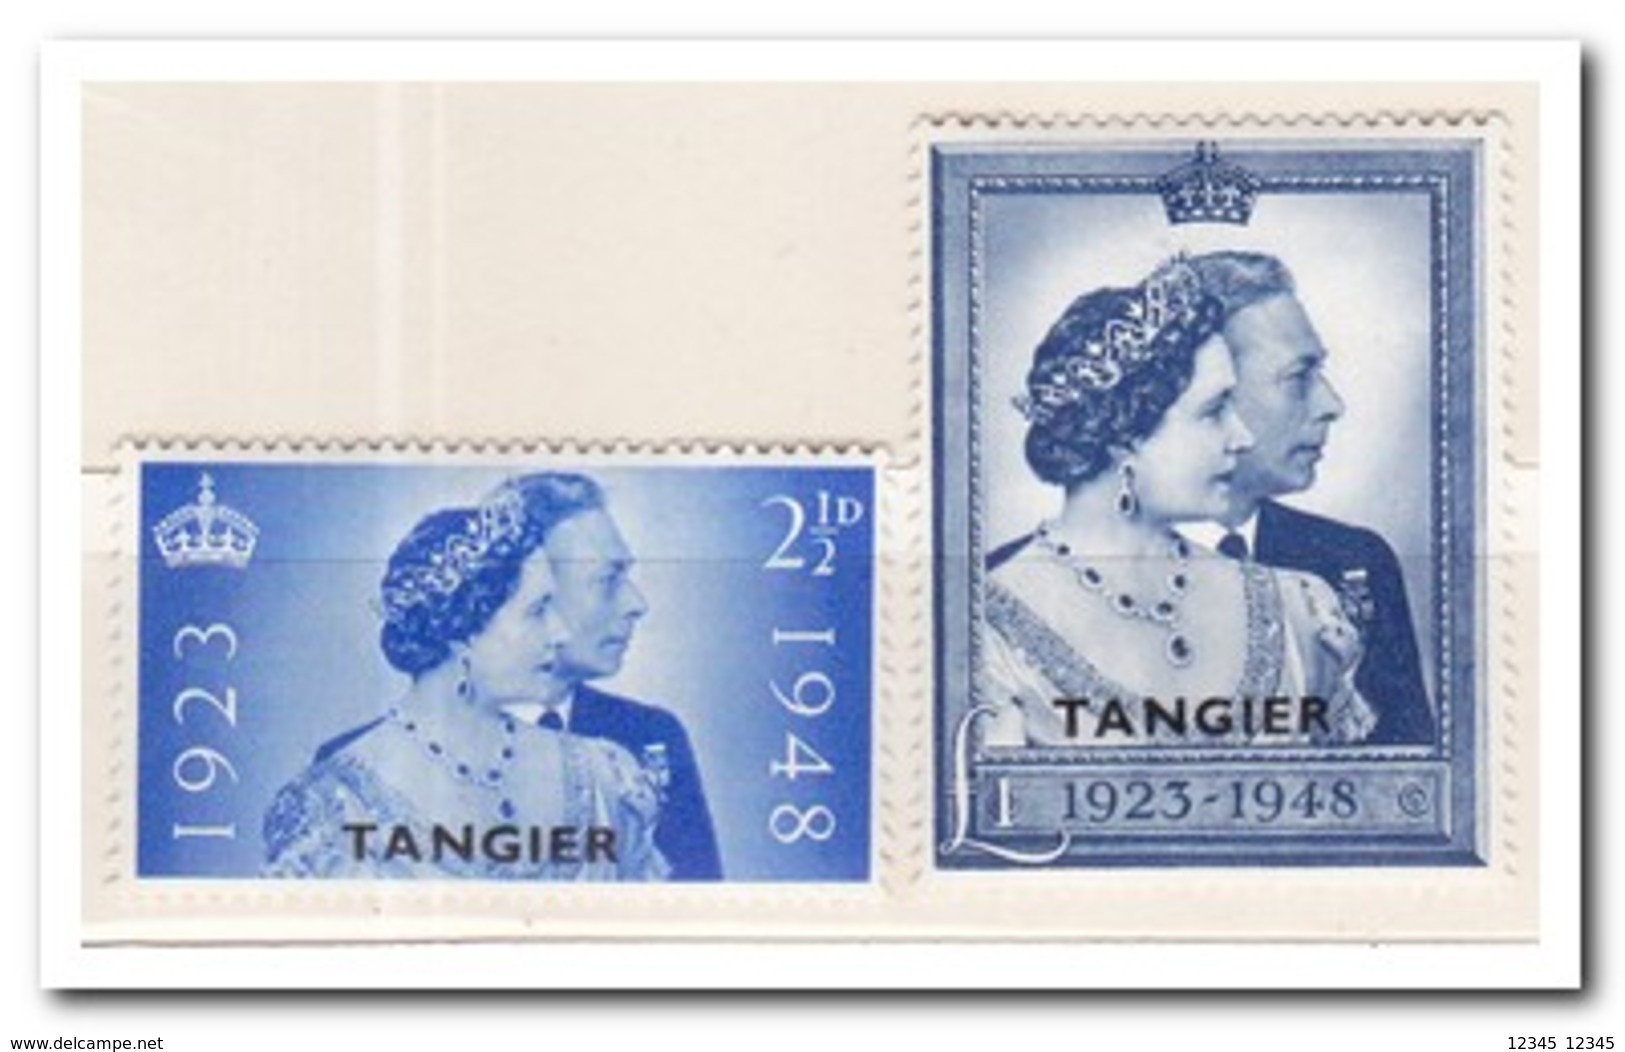 Tangier 1948, Britisch Post, Postfris MNH - Marokko (1956-...)